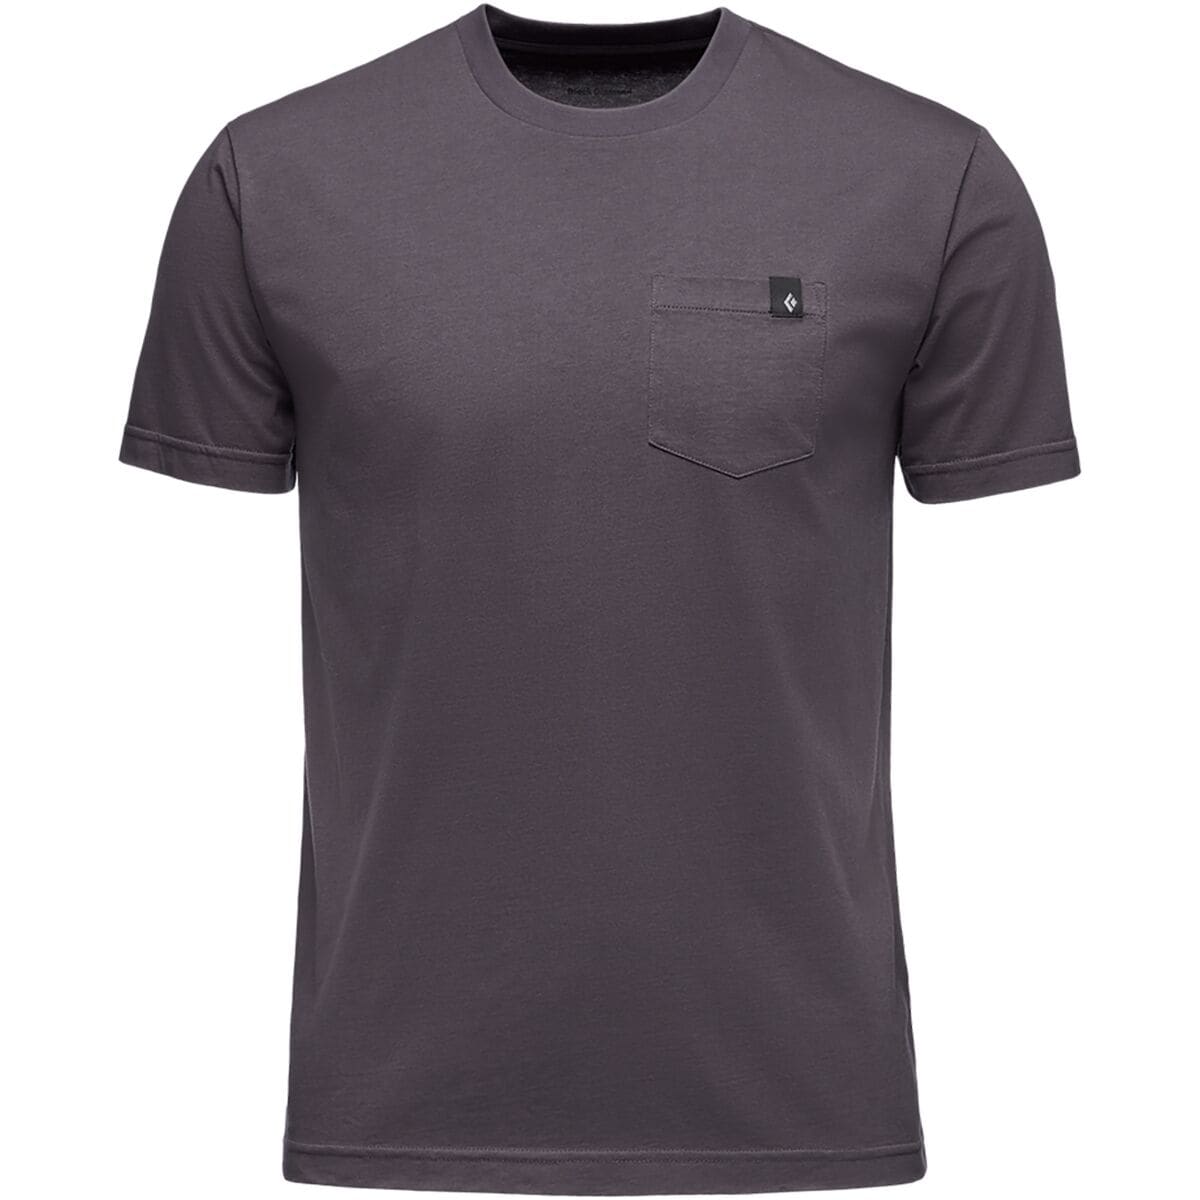 Crag Pocket T-Shirt - Men